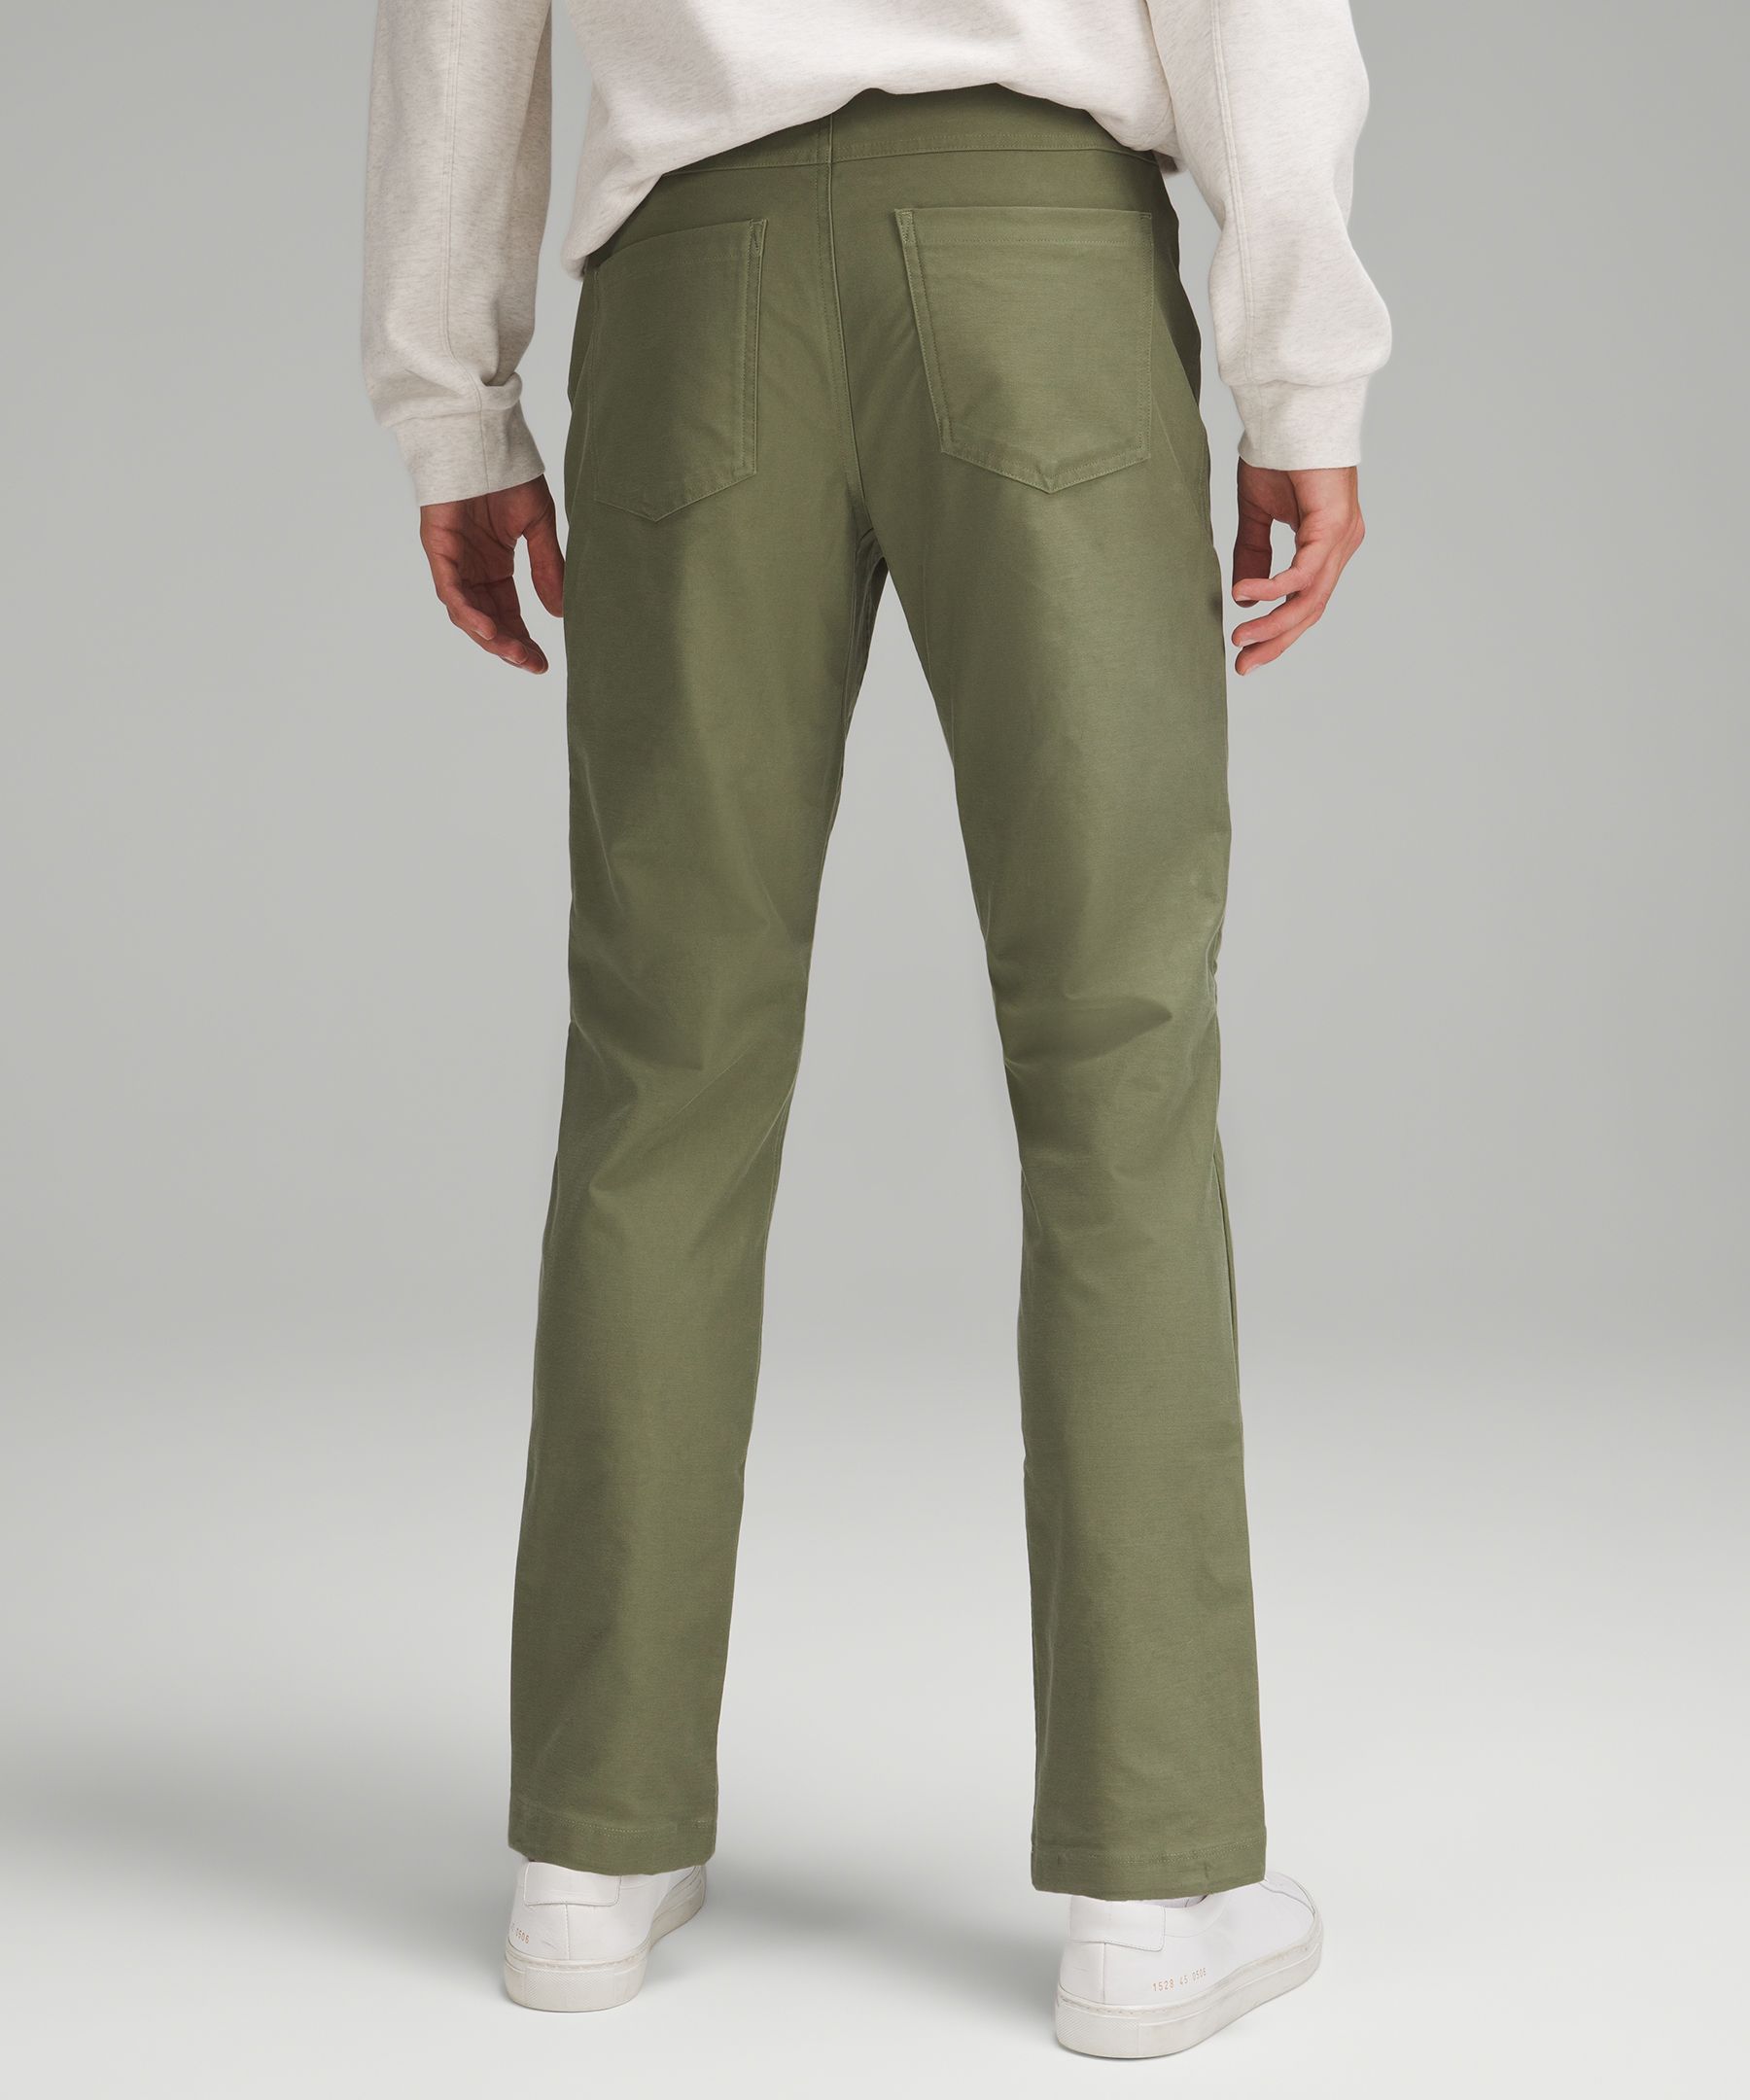 ABC Slim-Fit 5 Pocket Pant 34 *Utilitech, Men's Trousers, lululemon